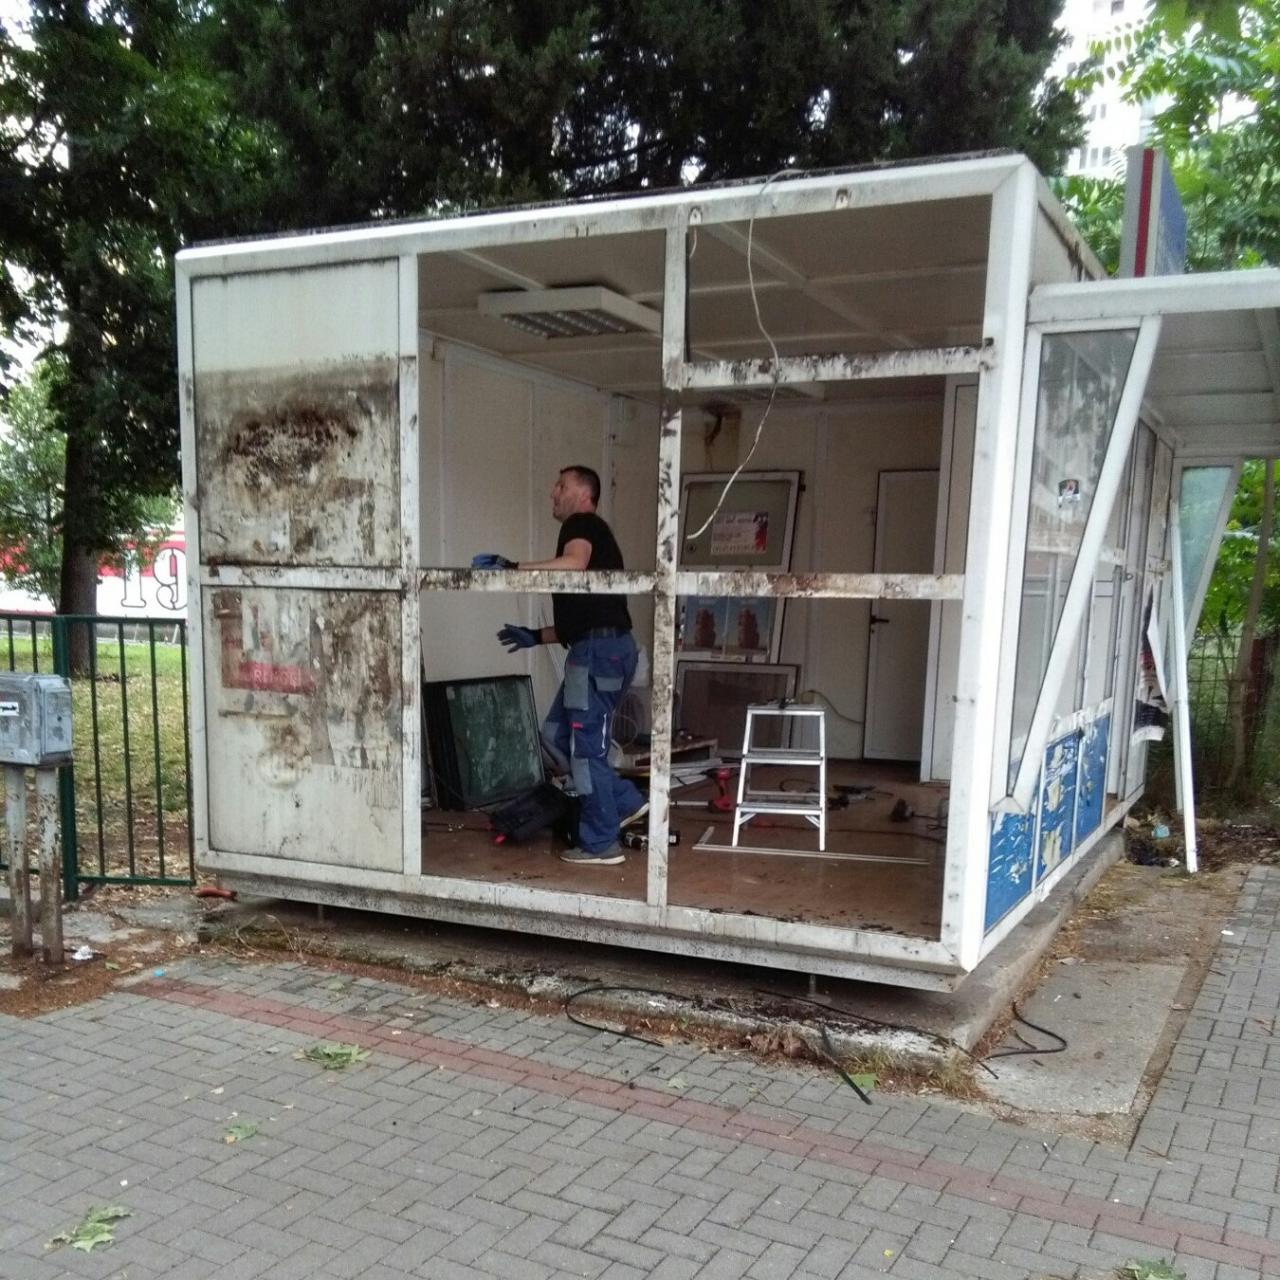 U Mostaru se nastavlja s uklanjanjem nelegalnih objekata - Uklonjen kiosk u Ulici Stjepana Radića